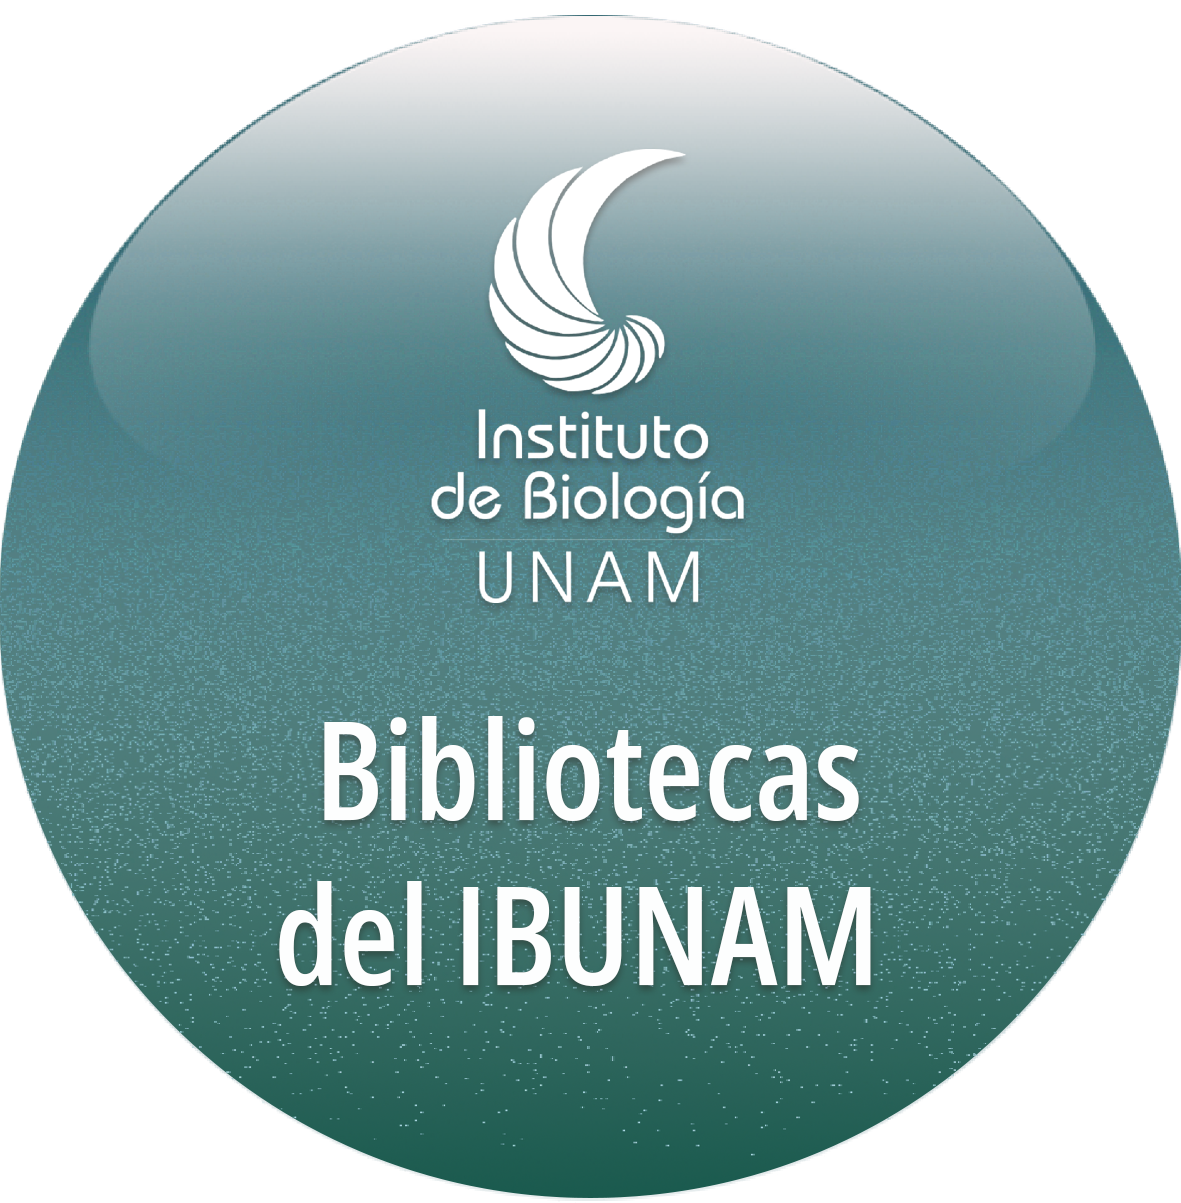 Bibliotecas - Instituto de Biología, UNAM